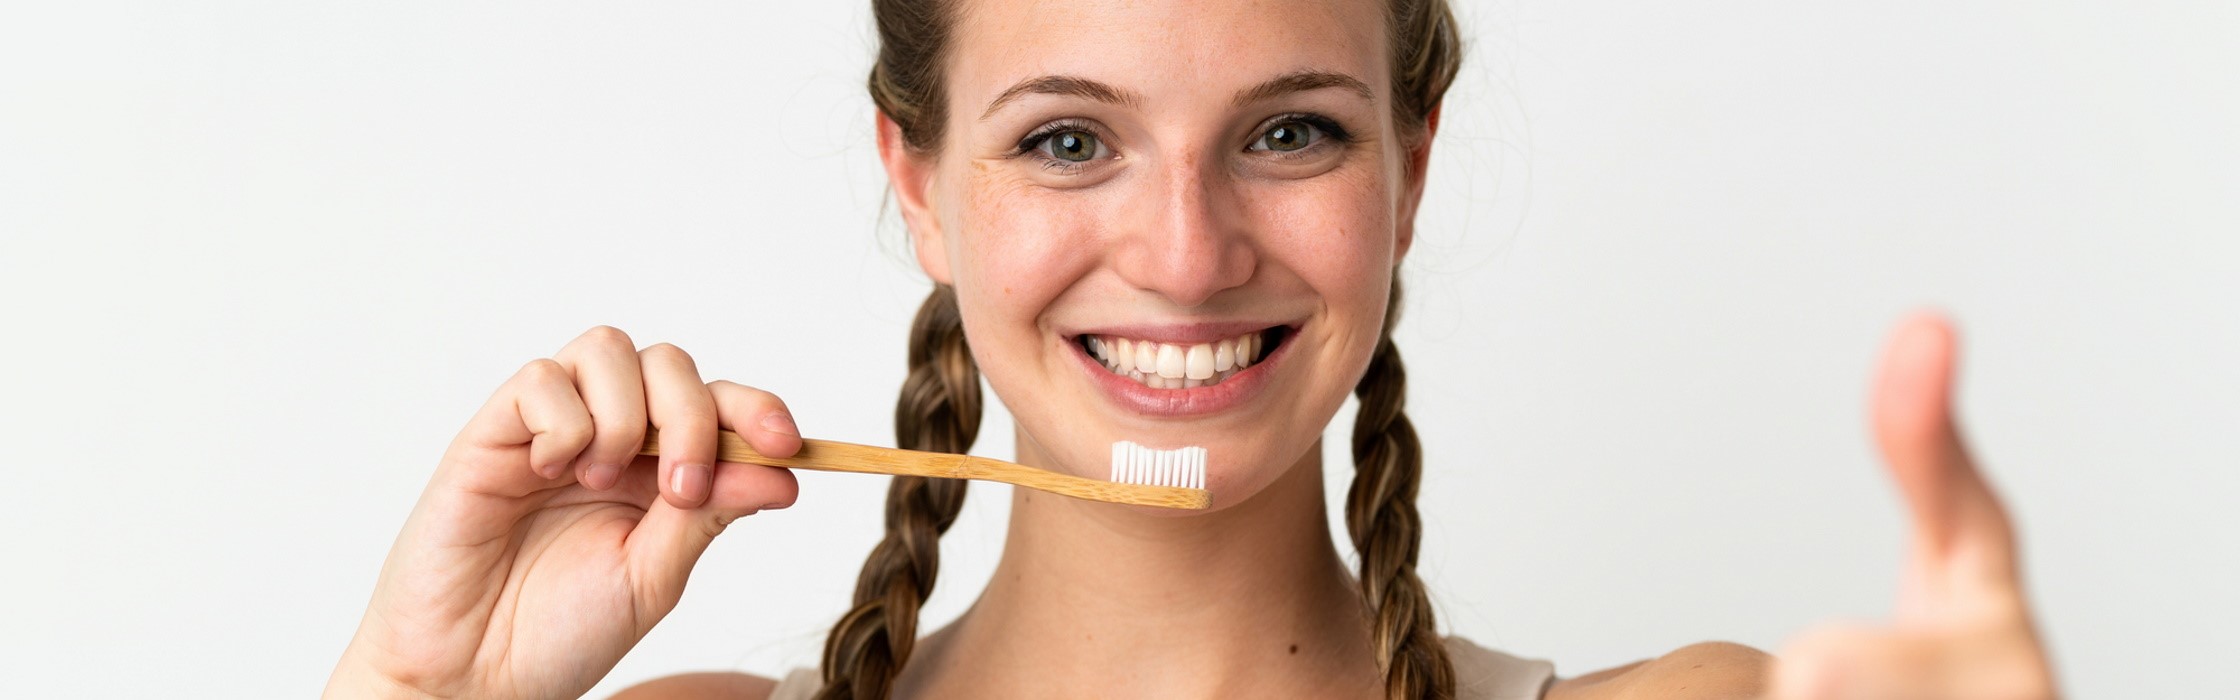 Mundhygiene von Jugendlichen – Zahnpflege in der Pubertät